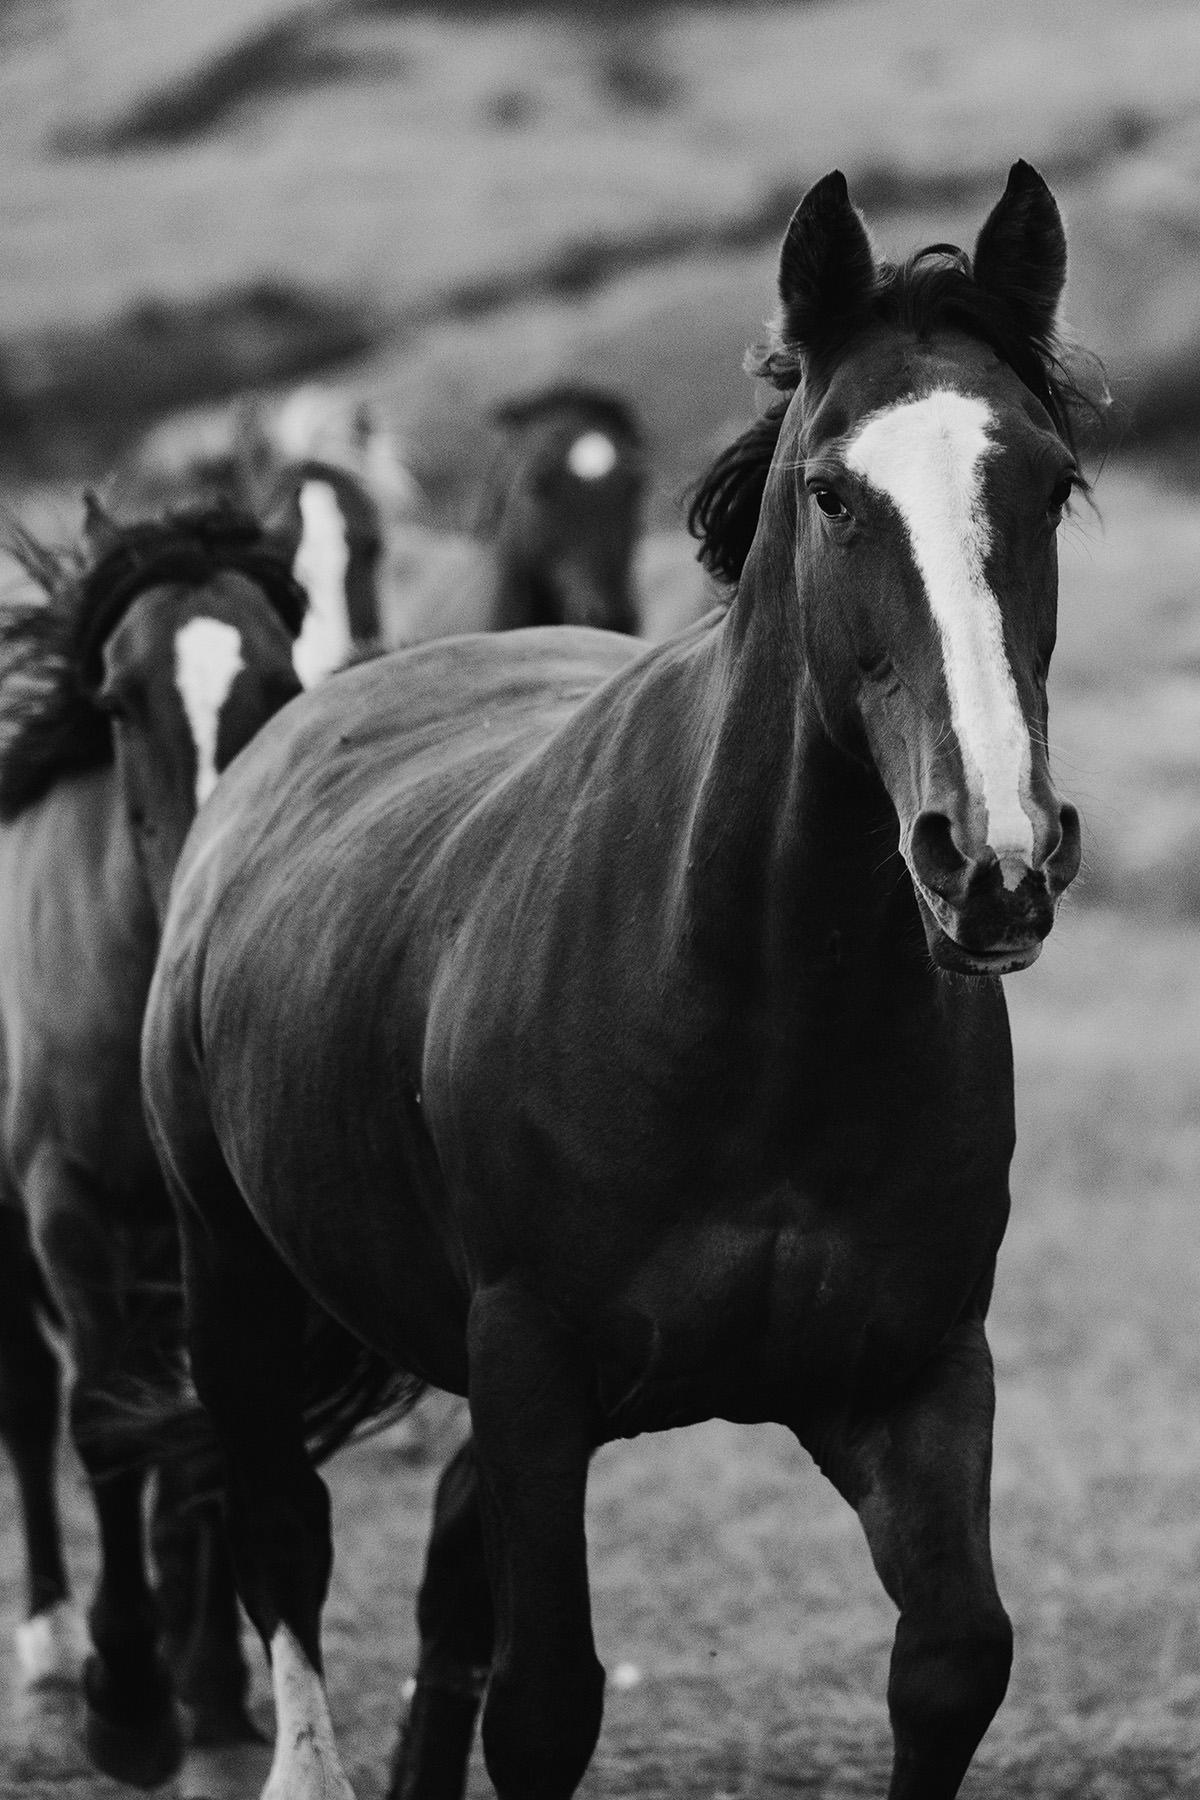 Kollektion mit Pferd, 3 Schwarz-Weiß-Druckgrafiken-Prancing Peter, Schuhladen und Pferdkopf